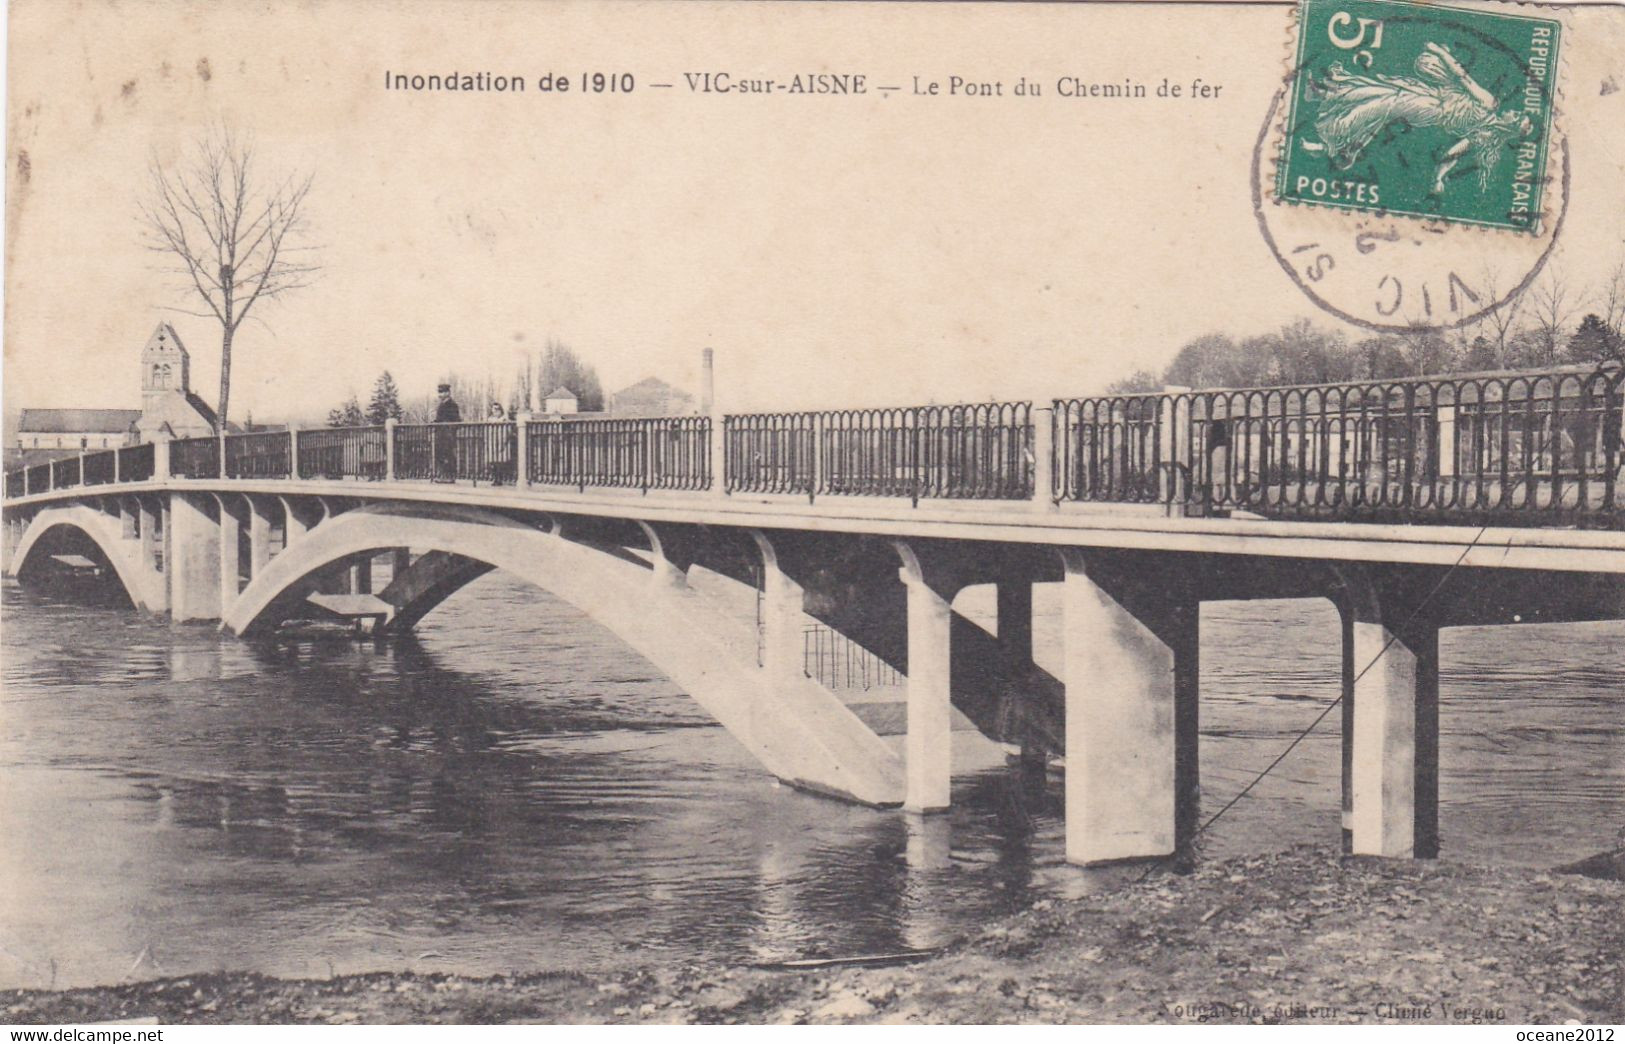 02 Vic Sur Aisne. Inondation De 1910. Le Pont De Chemin De Fer - Vic Sur Aisne